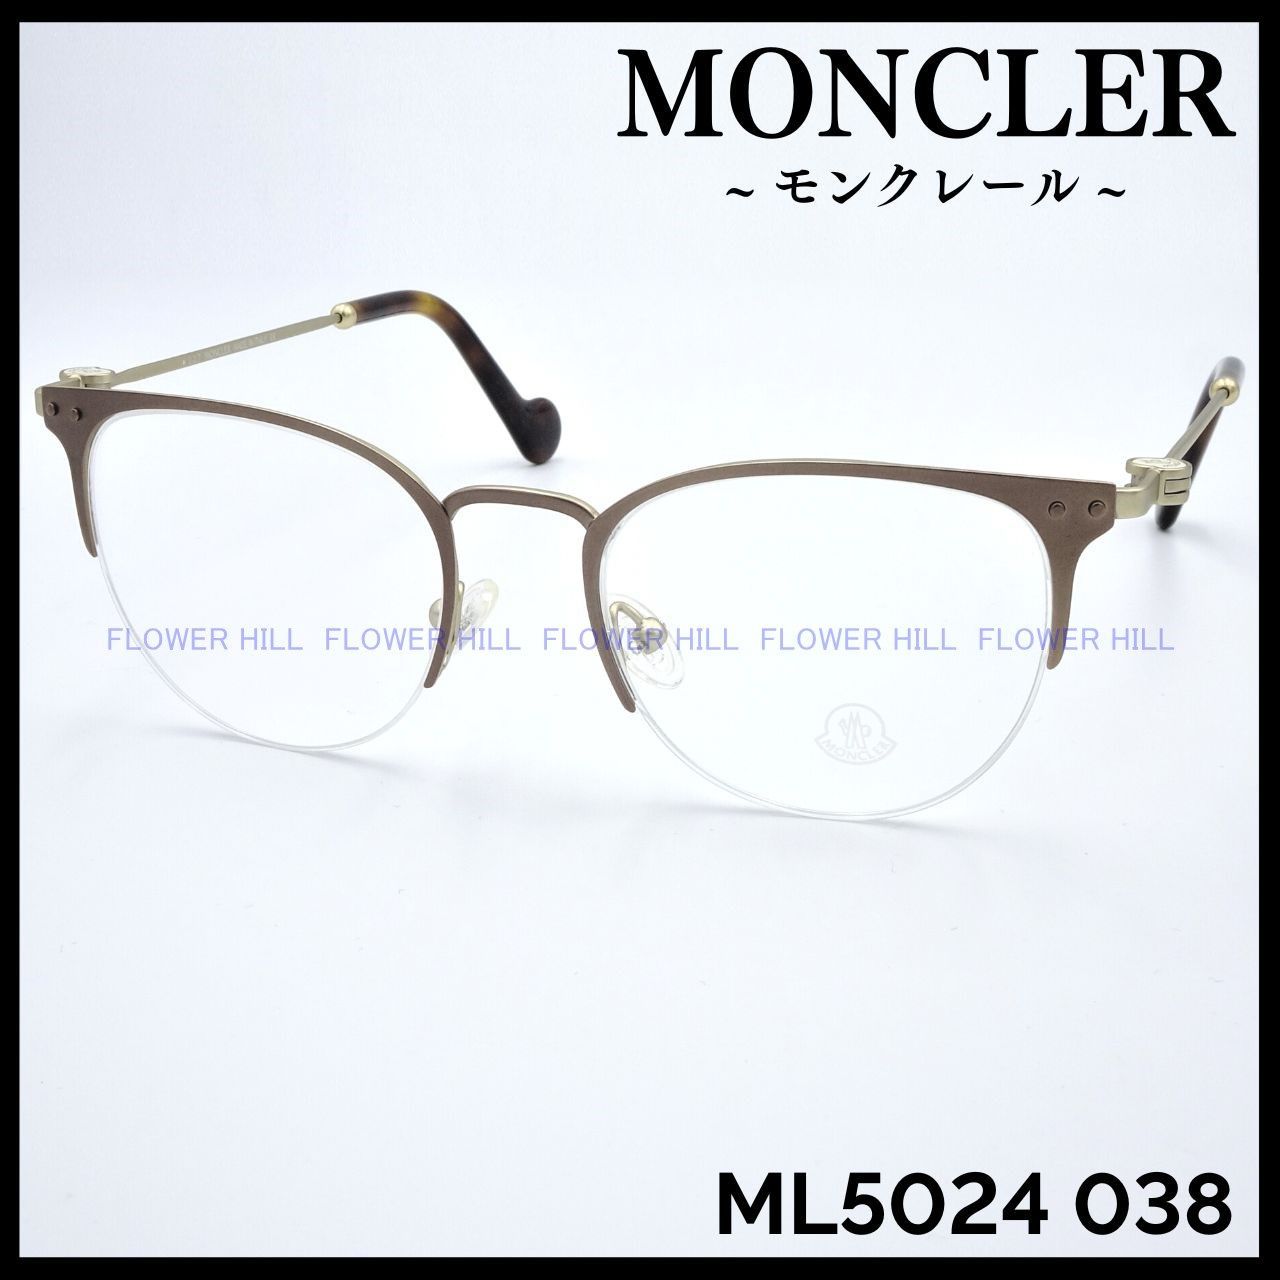 MONCLER　ML5083 030　メガネ フレーム　ゴールド　モンクレール